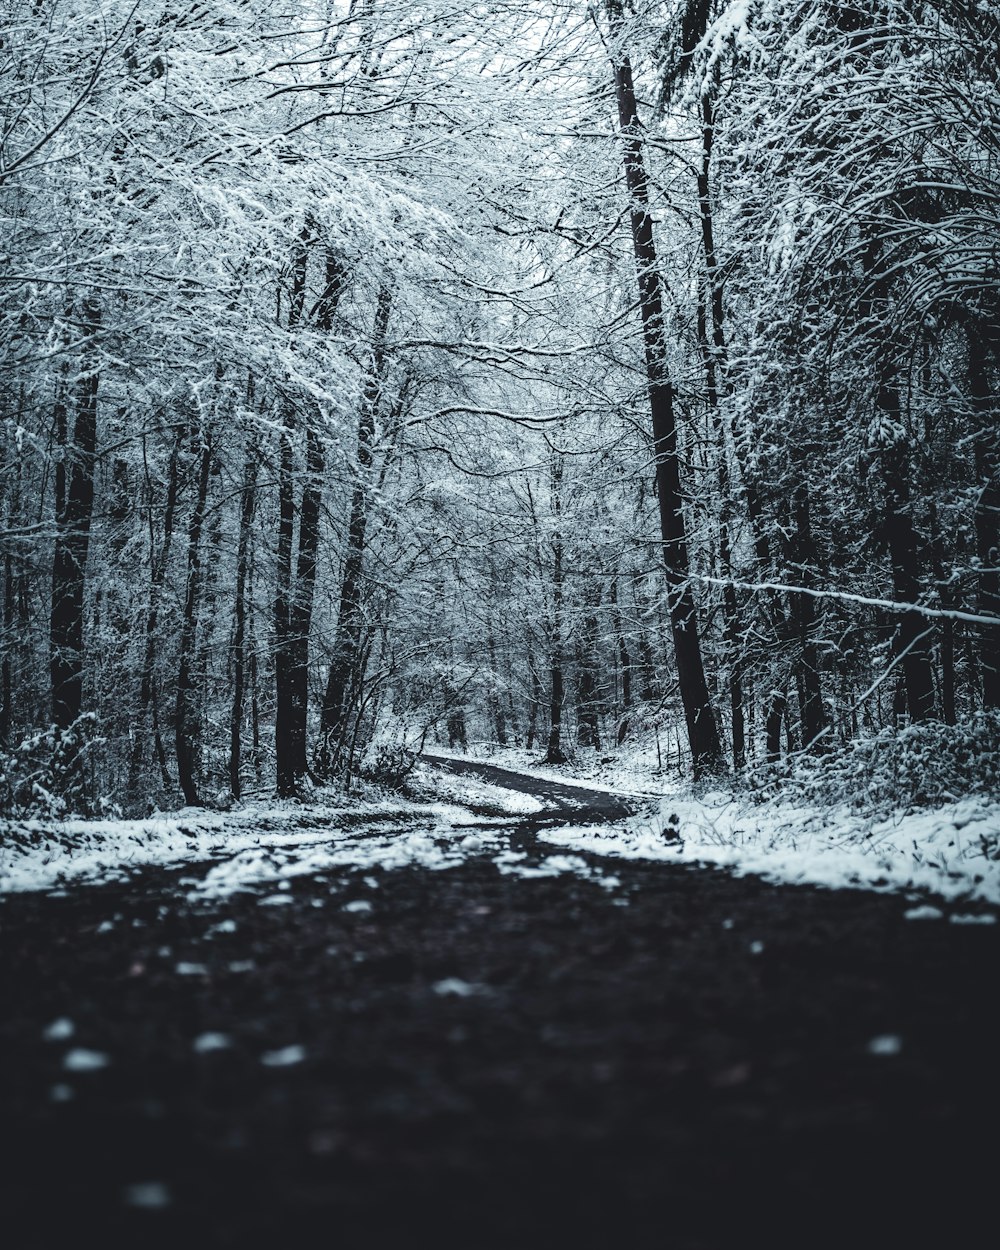 sentier noir entre des arbres dénudés recouverts de neige pendant la journée